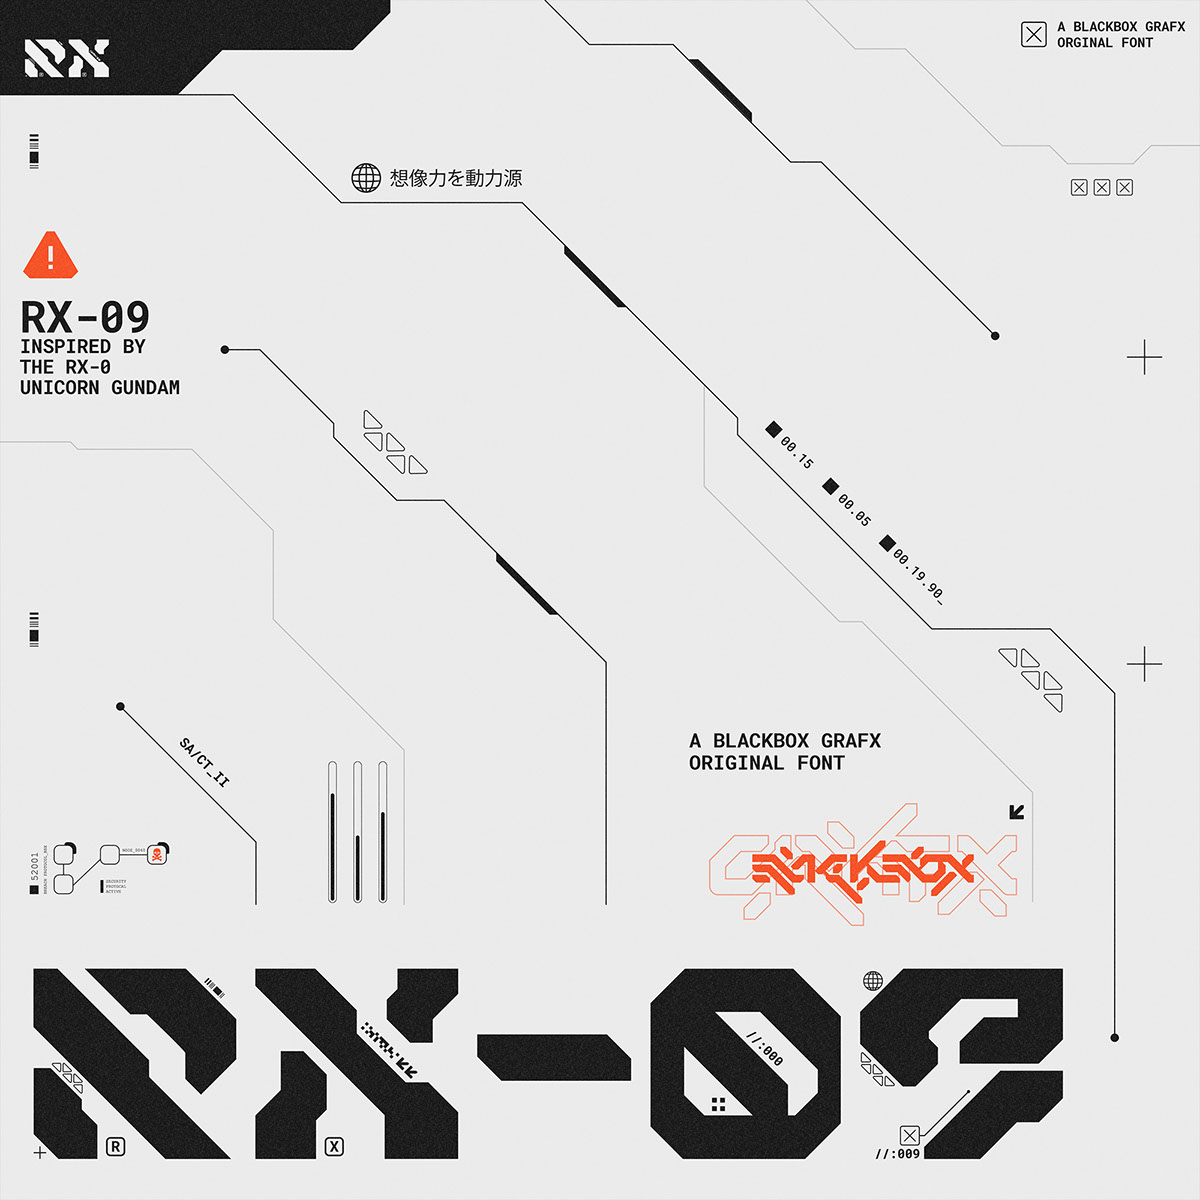 RX-09 rendition image